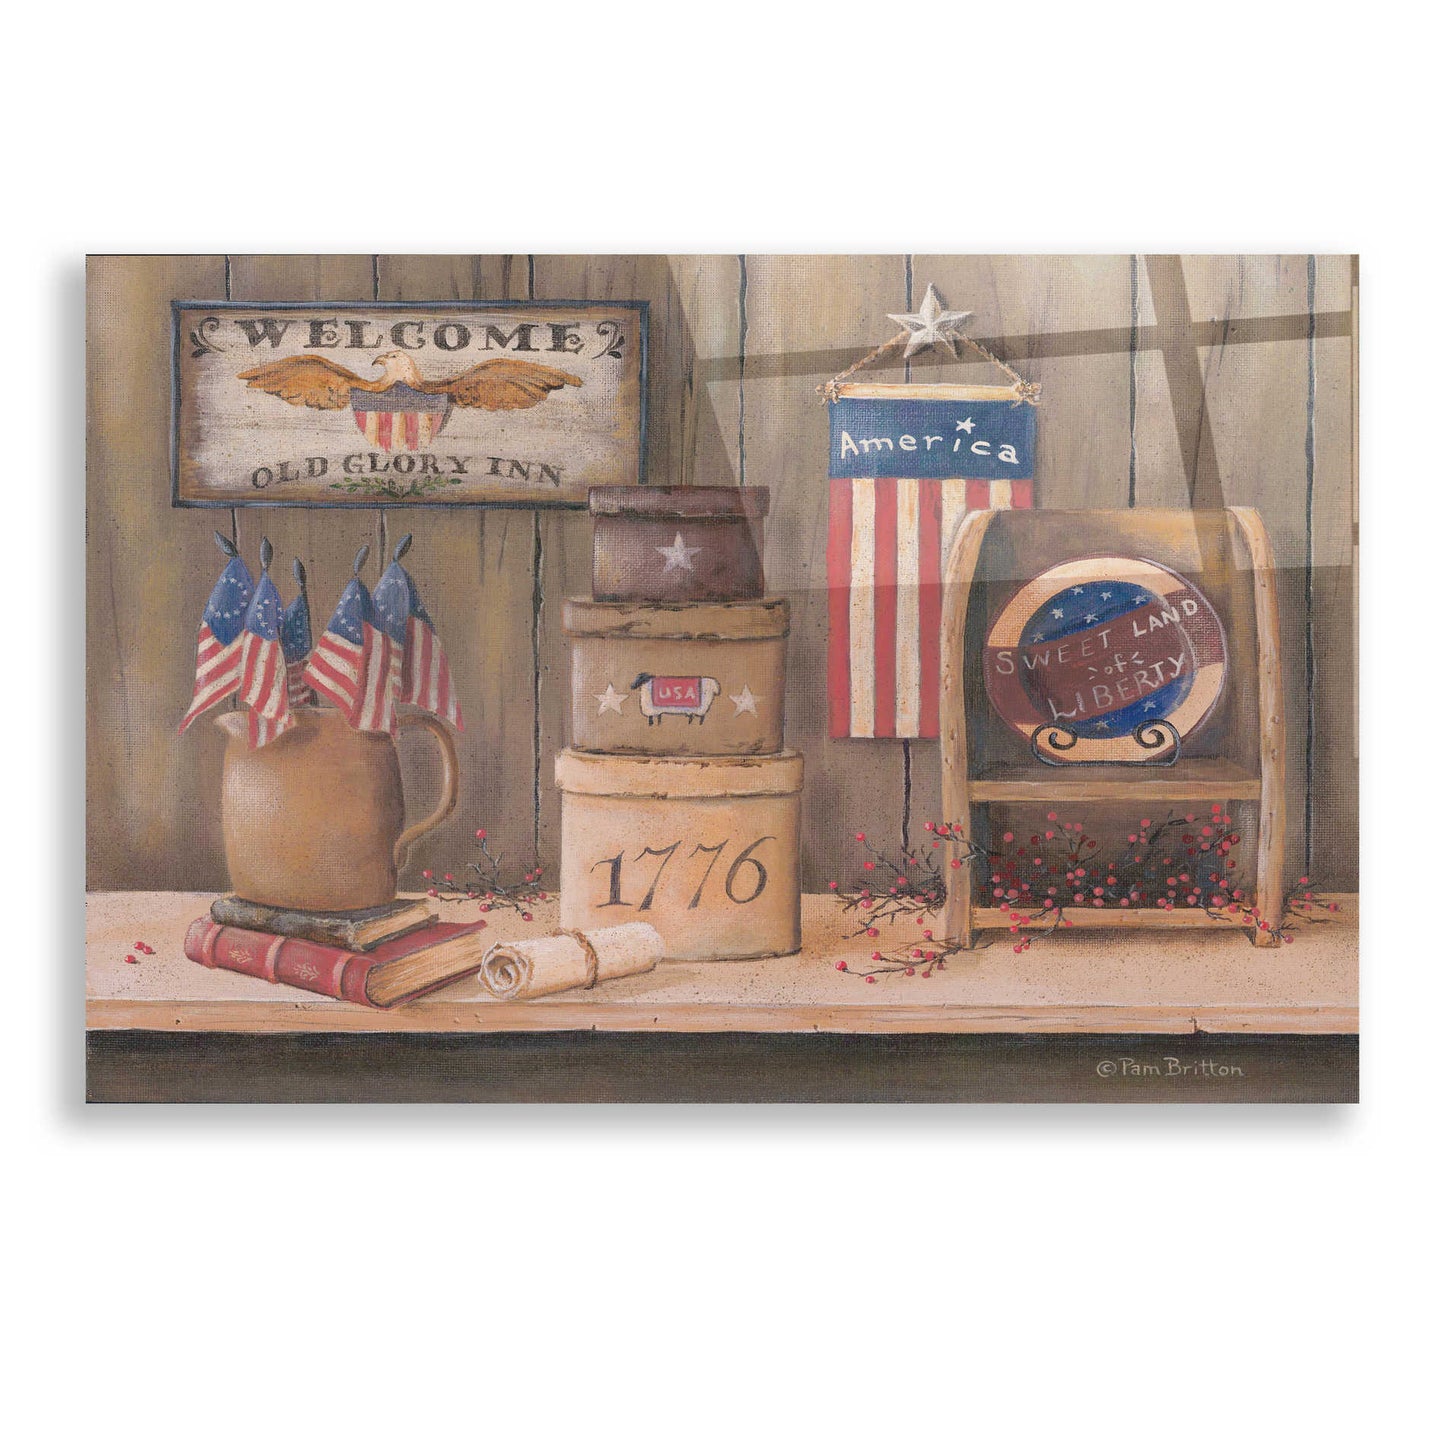 Epic Art 'Sweet Land of Liberty' by Pam Britton, Acrylic Glass Wall Art,24x16